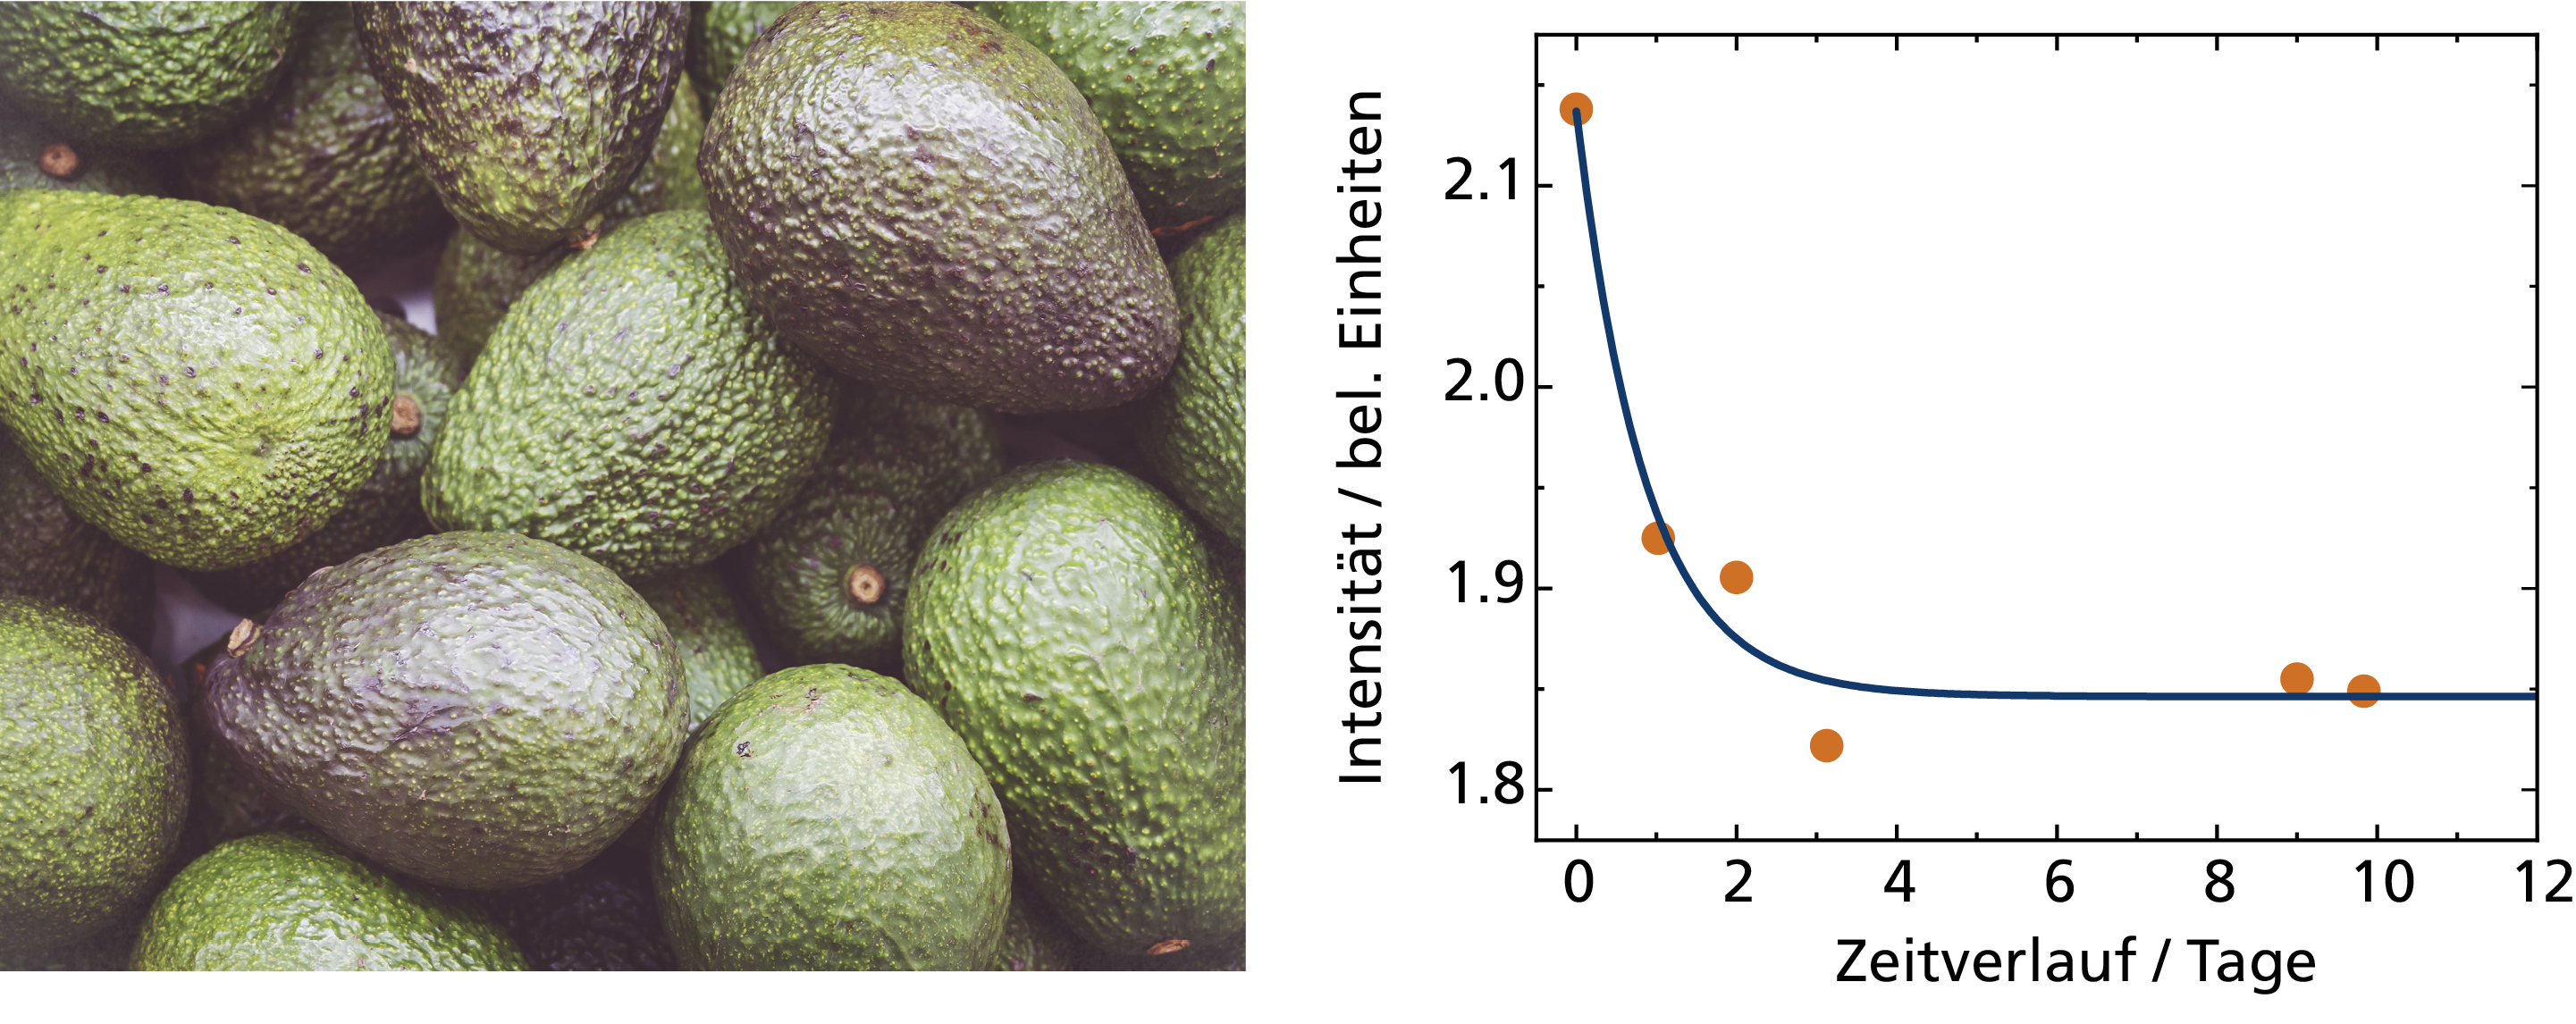 Das Beispiel zeigt die veränderte spektrale Antwort einer Avocado während des Reifeprozesses.